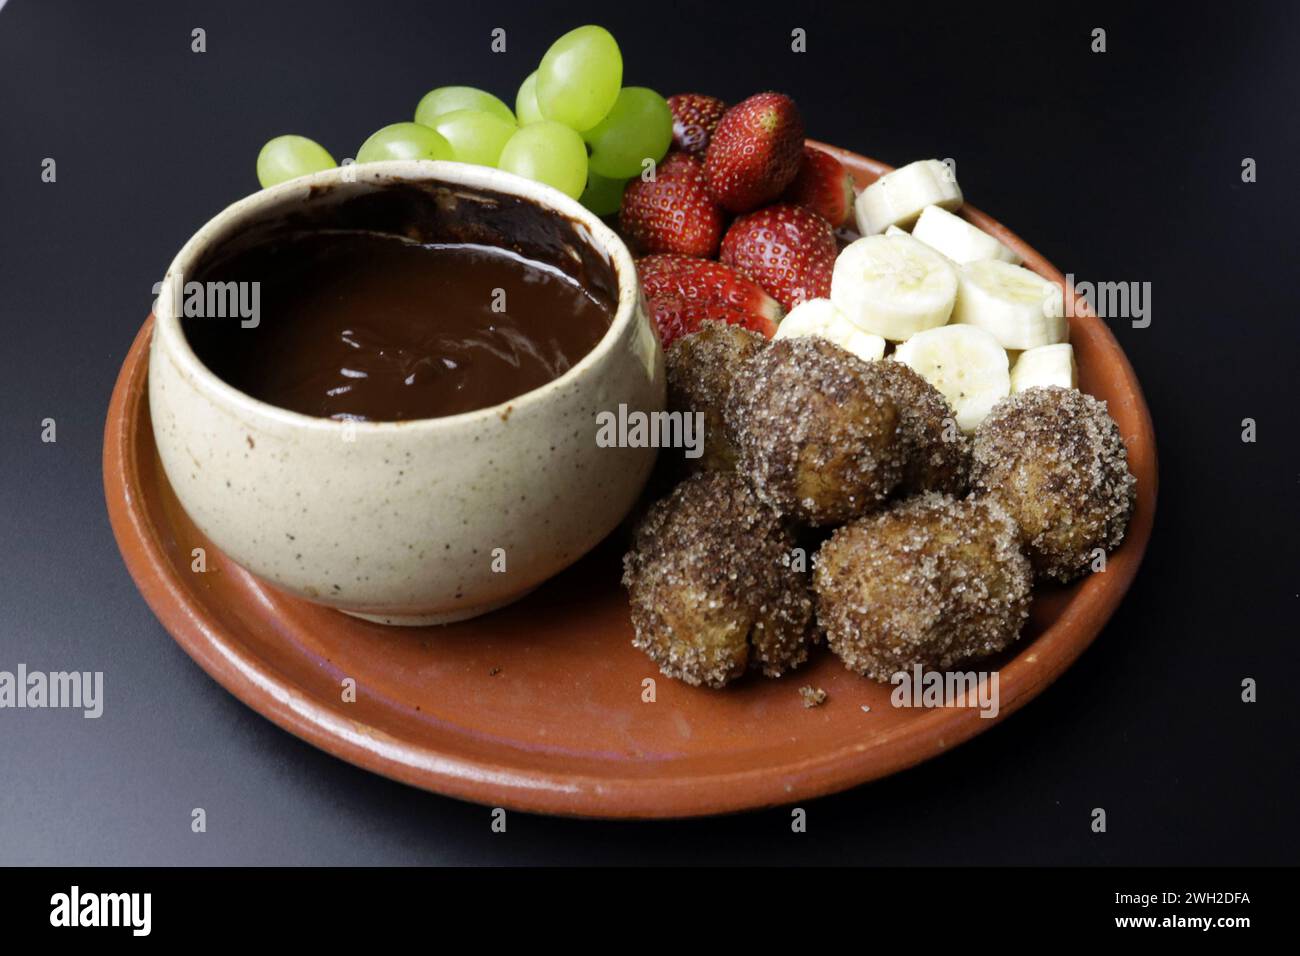 Una deliziosa fonduta al cioccolato servita con churros croccanti, uva fresca, fragole e banana. Foto Stock